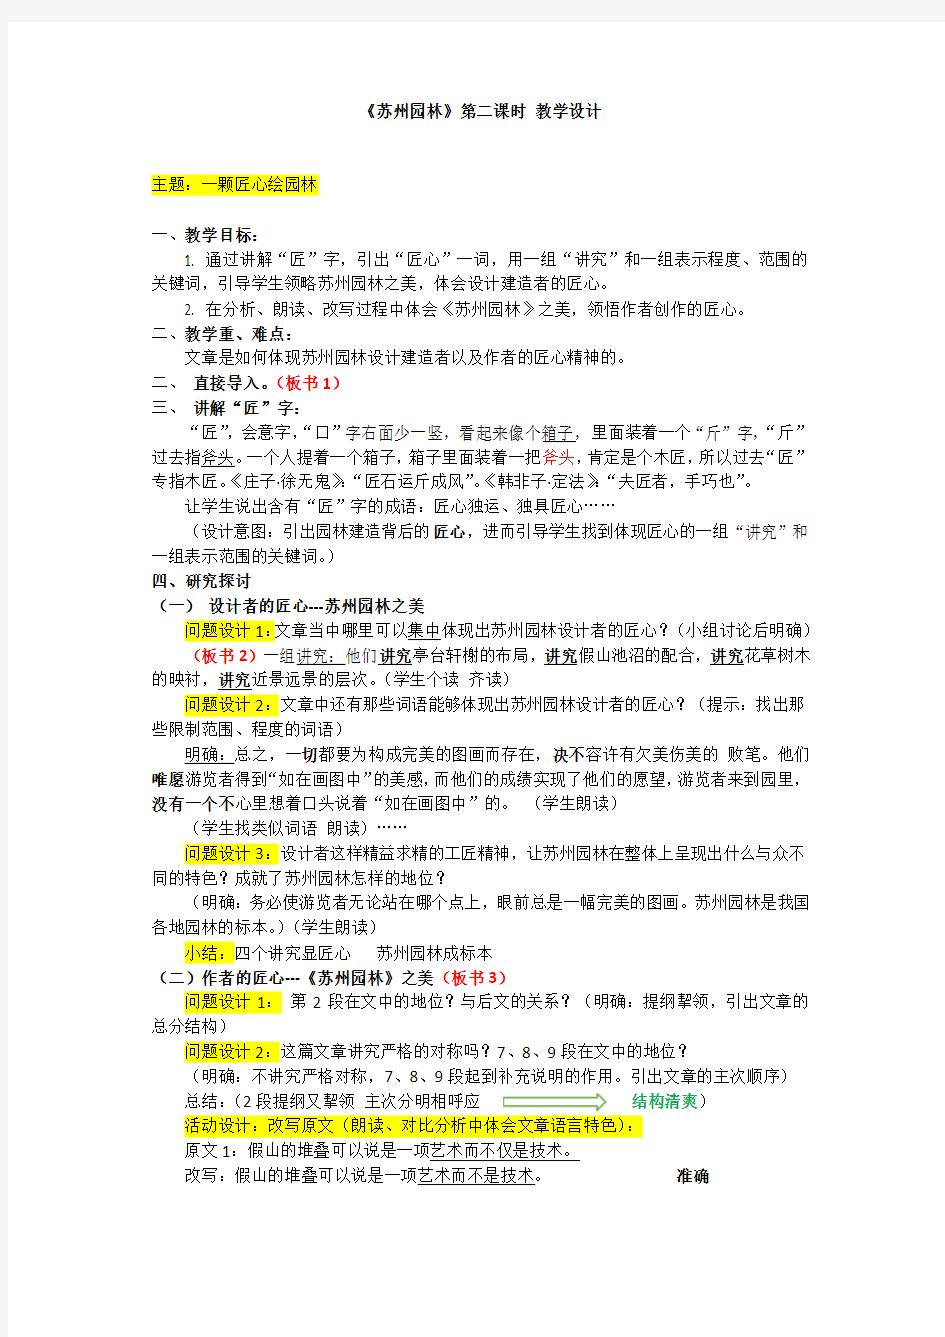 初中语文苏州园林教学设计学情分析教材分析课后反思观评记录